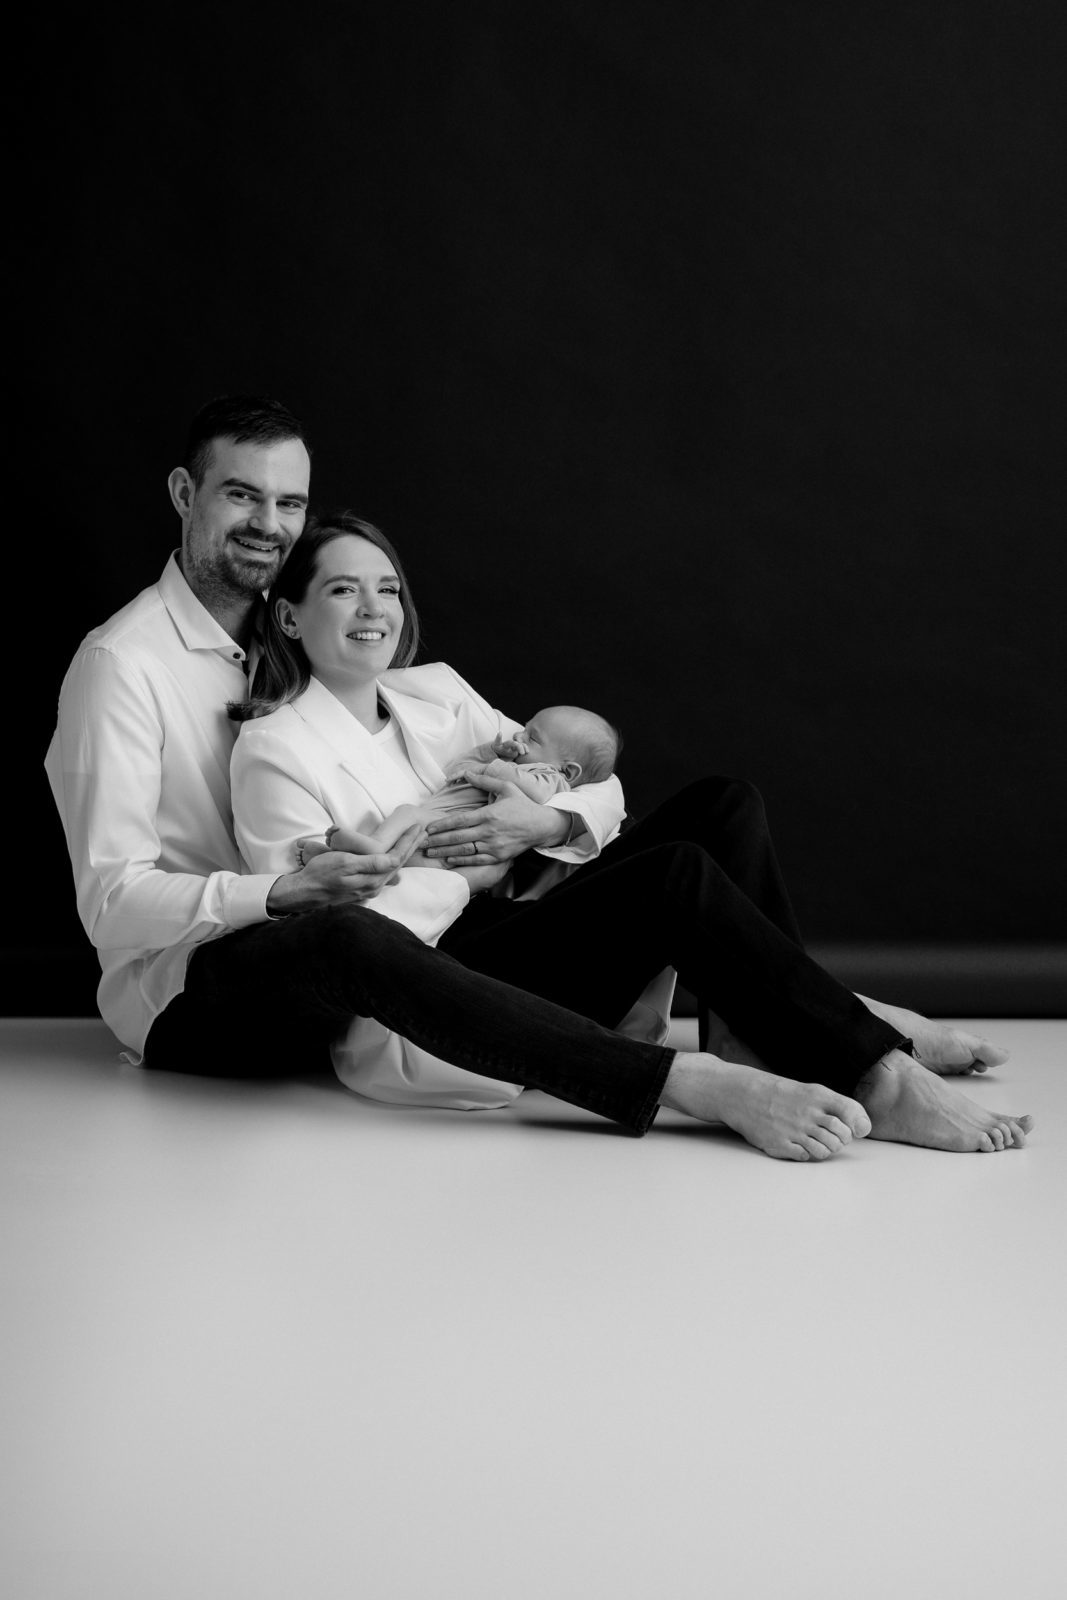 Črno-bela fotografija, ki prikazuje par, ki drži novorojenčka. Par sedi na belem tleh s črnim ozadjem. Moški nosi belo srajco in črne hlače, ženska pa belo bluzo in črne hlače. Novorojenček nosi belo pajacko in ga drži ženska.